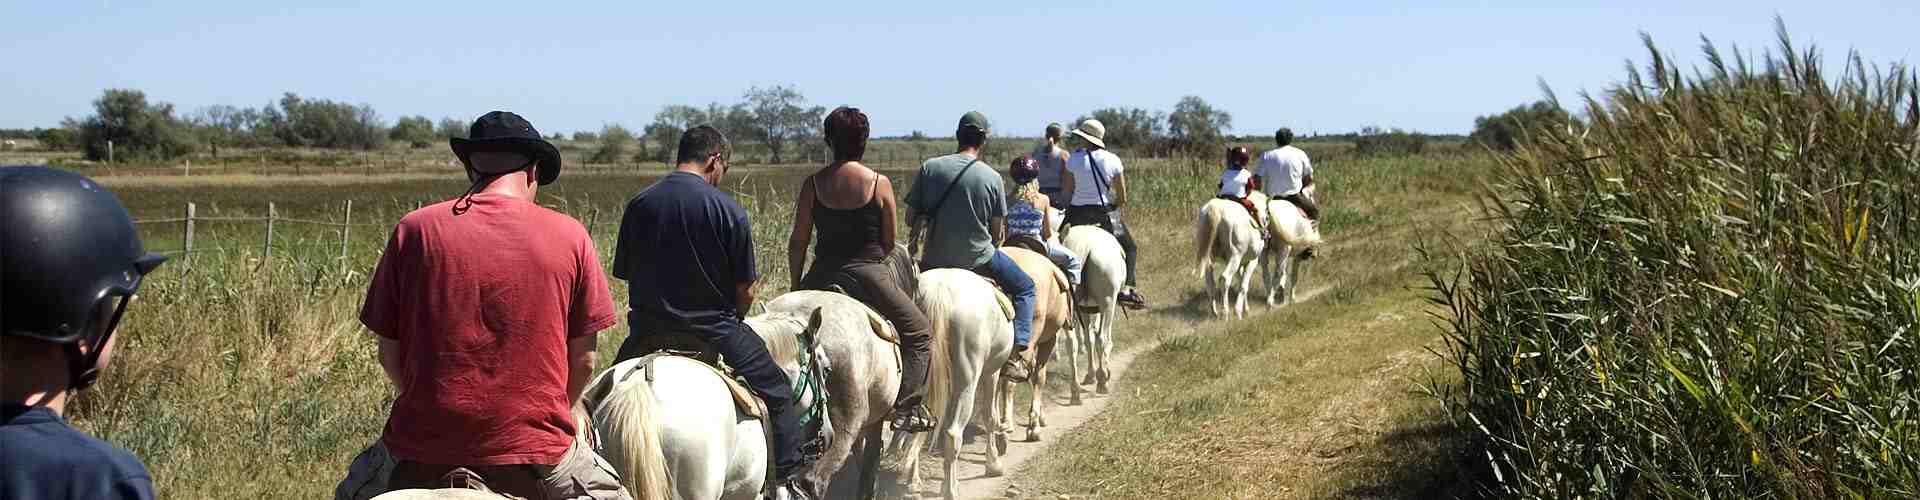 Rutas a caballo en Areatza